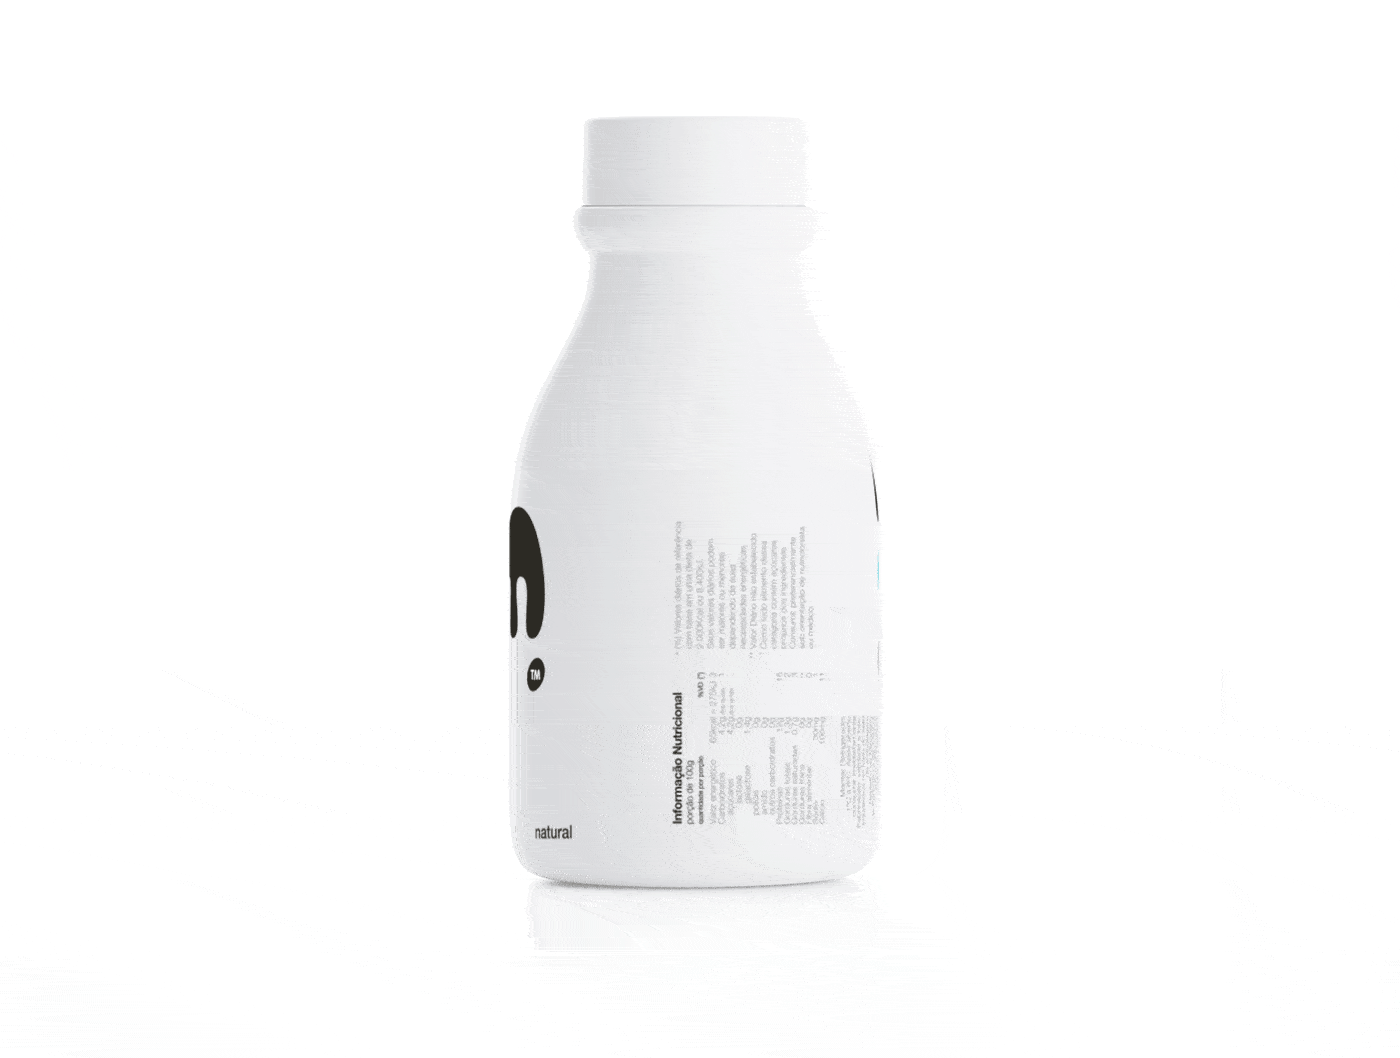 極簡風格的MOO酸奶包裝